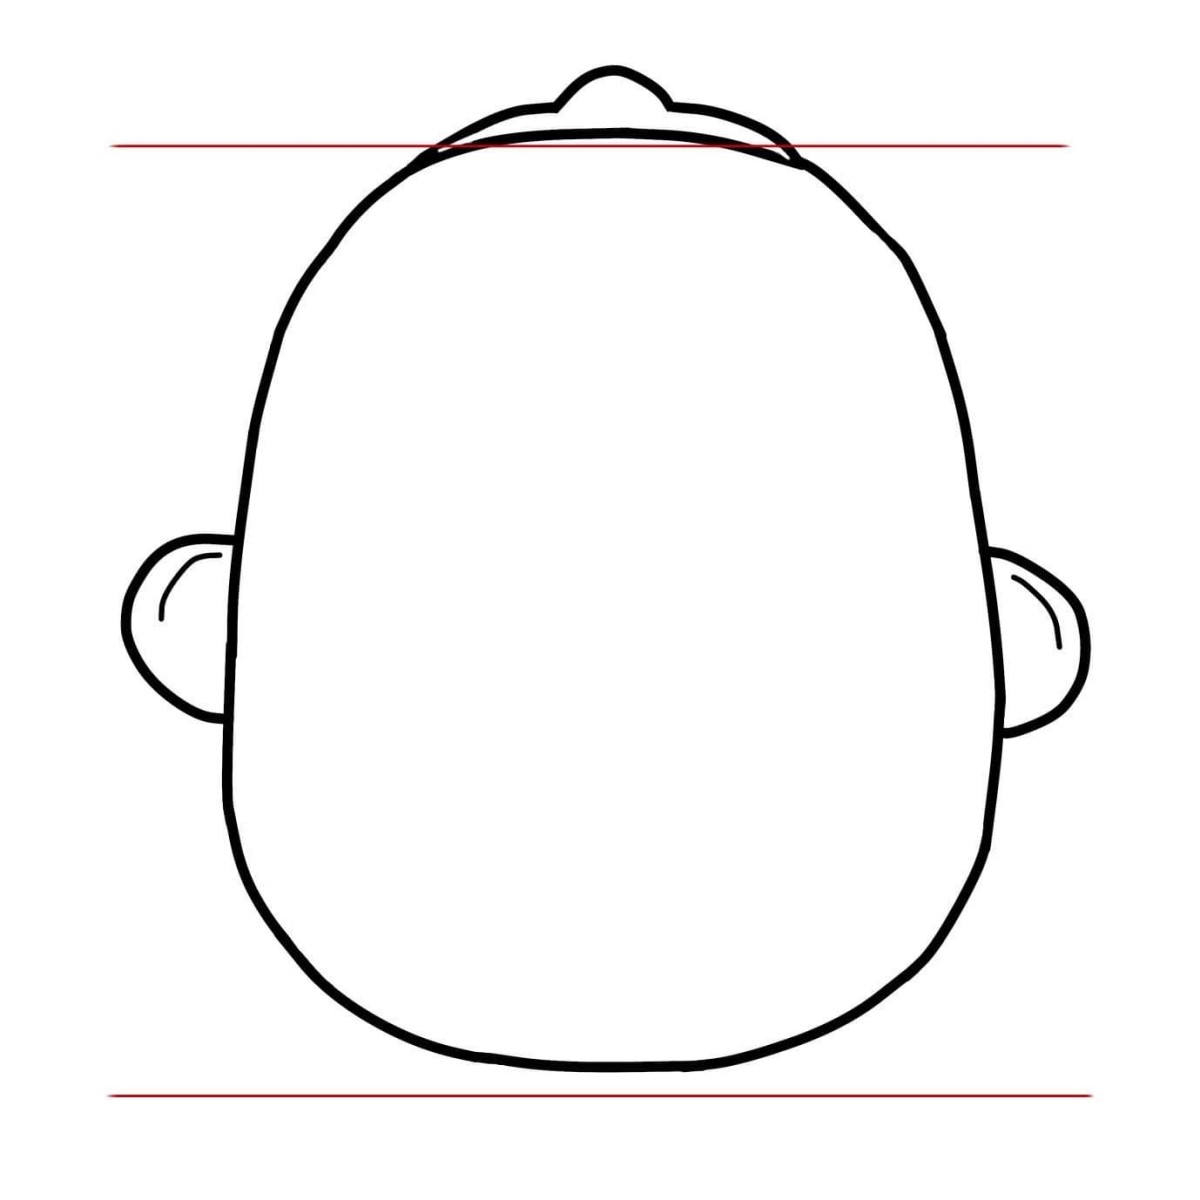 normálny symetrický tvar lebky dieťaťa